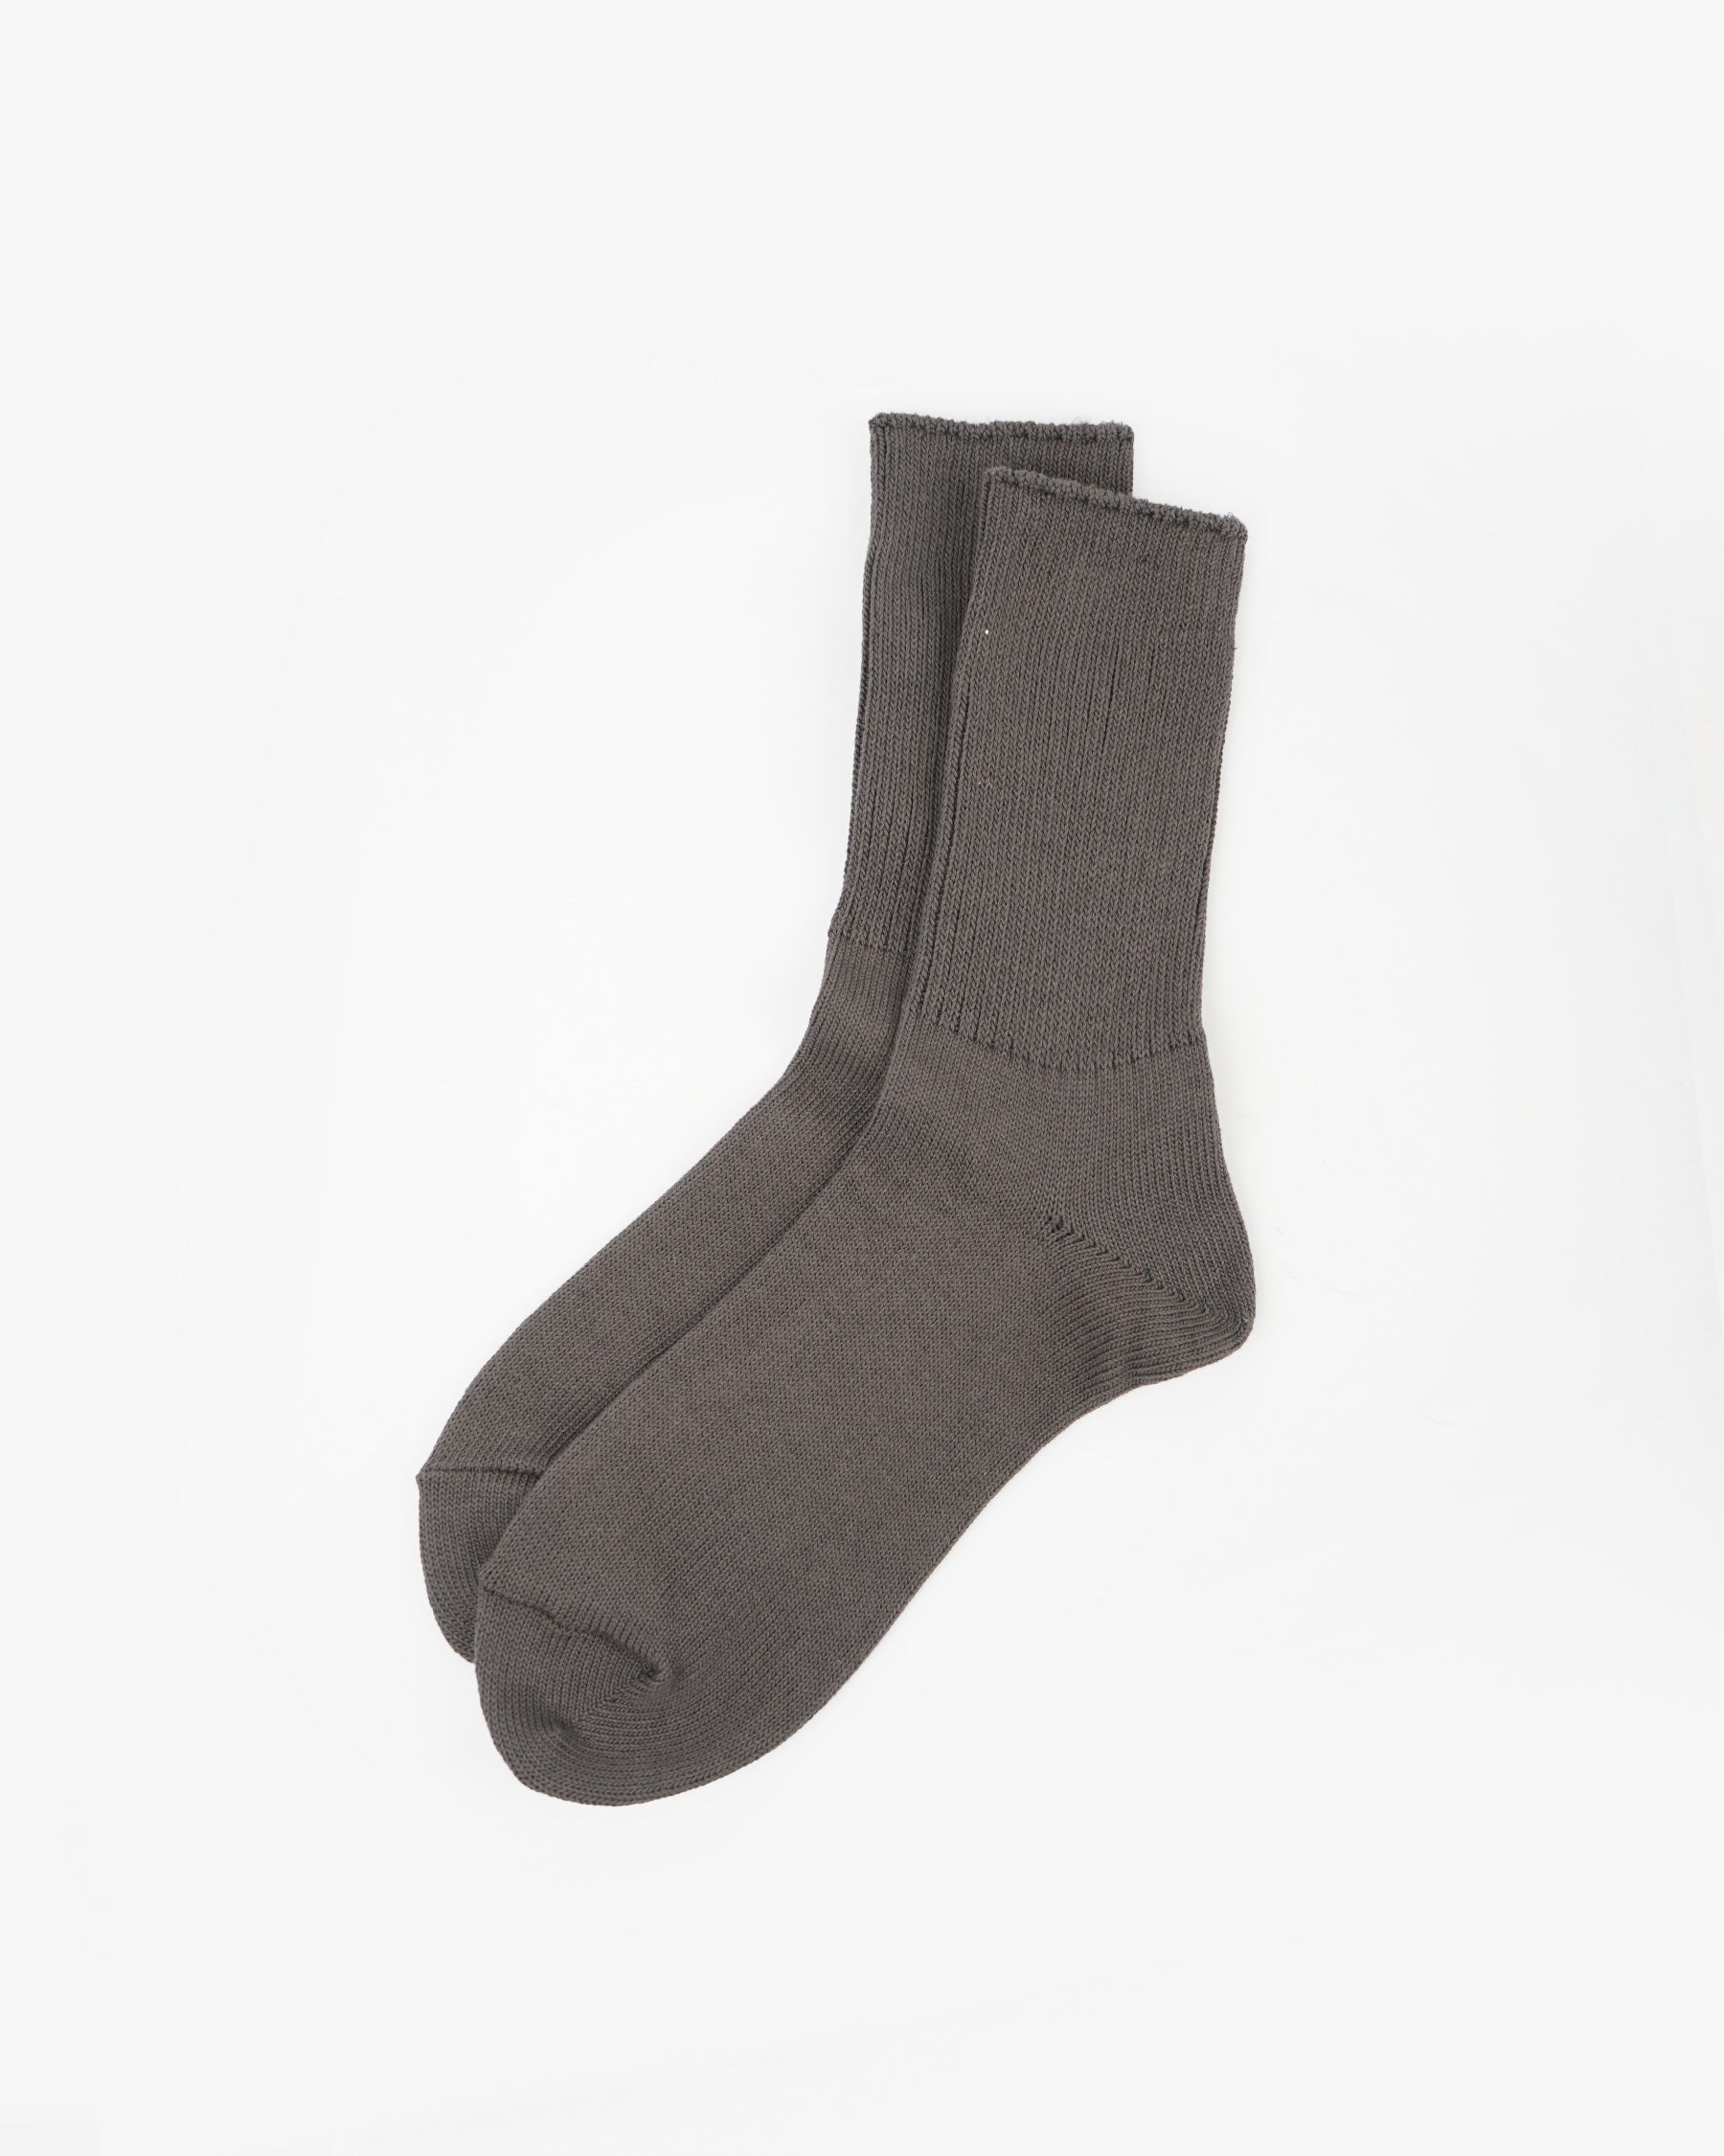 Rib Socks / Gray